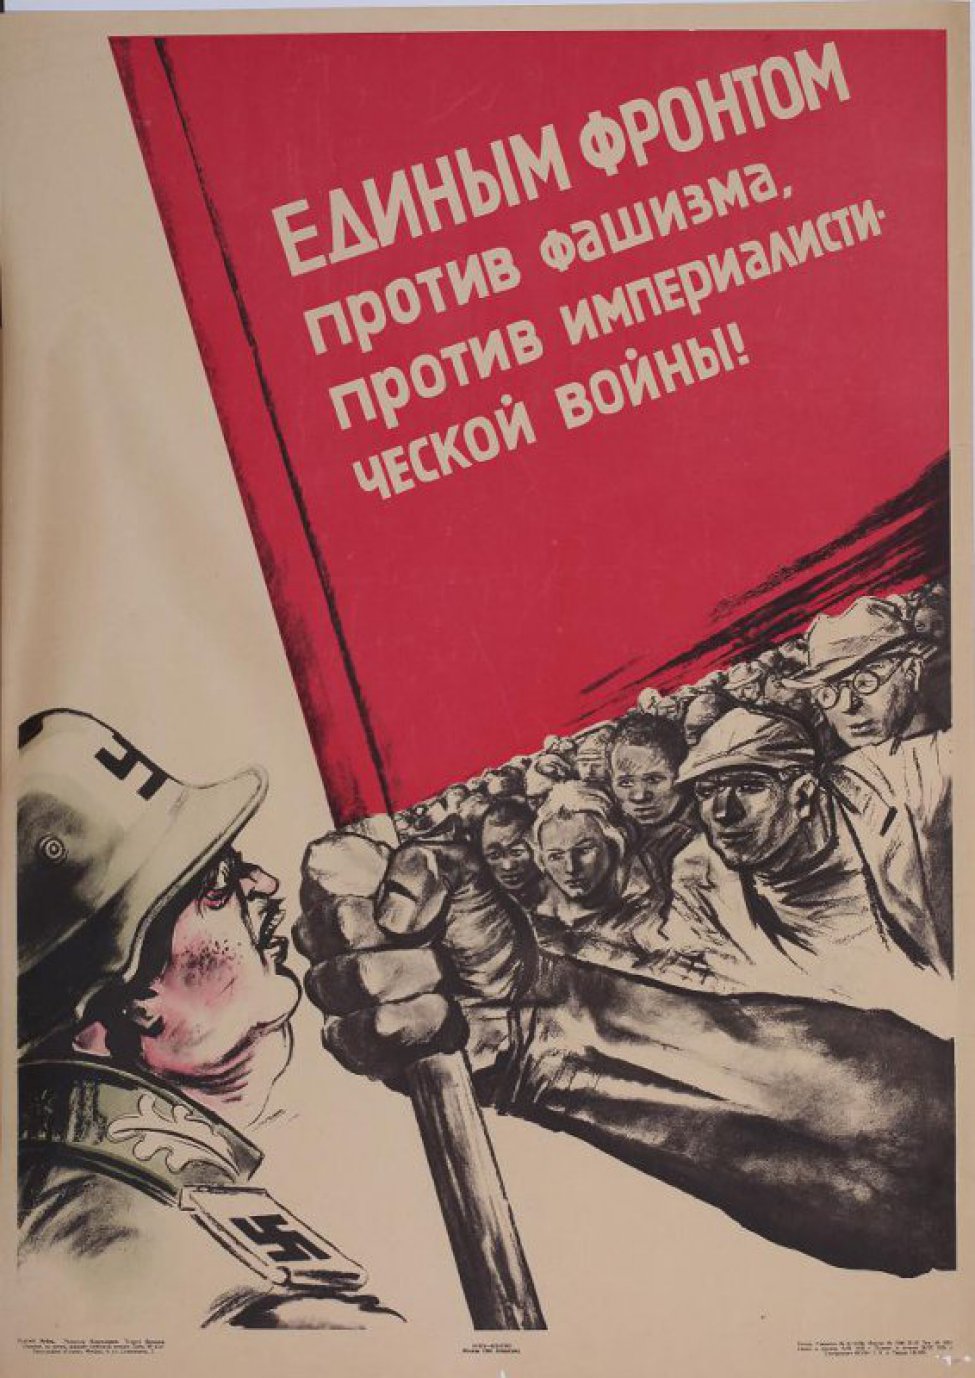 Изображена справа трудящаяся и мускулистая рука, держащая знамя, слева толстая голова фашиста в каске и открытым ртом с оскаленными зубами.